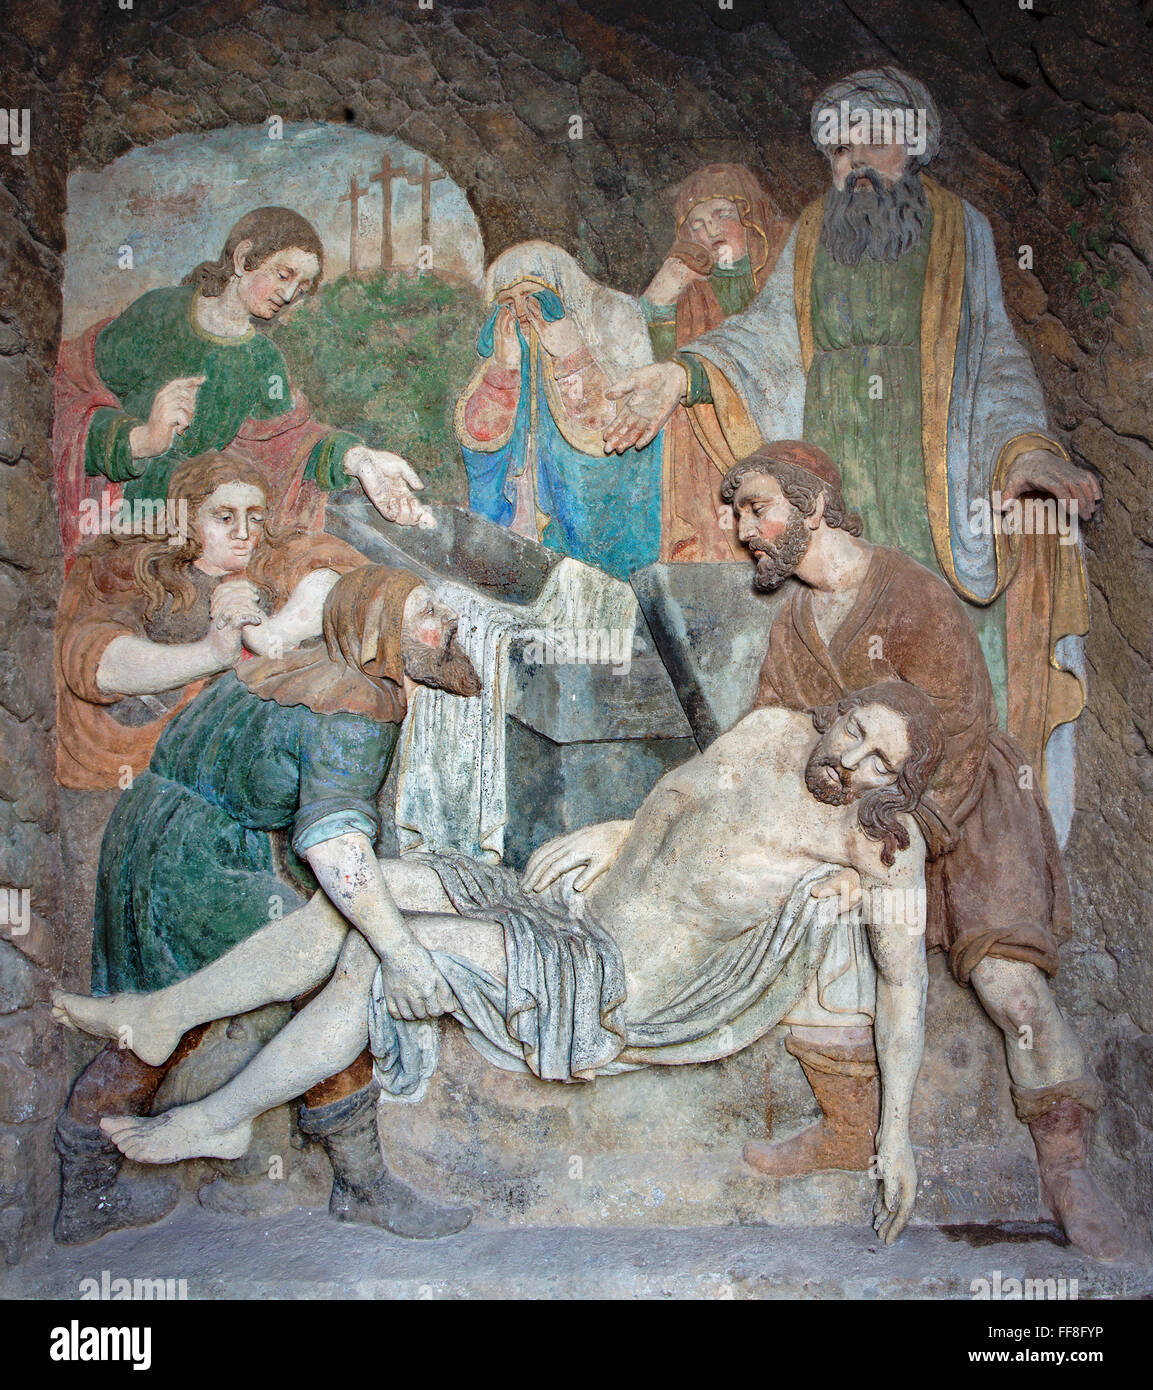 BANSKA STIAVNICA, Slovacchia - 19 febbraio 2015: il dettaglio a bassorilievo in pietra della sepoltura di Gesù dal 18. secolo, di autore ignoto. Foto Stock